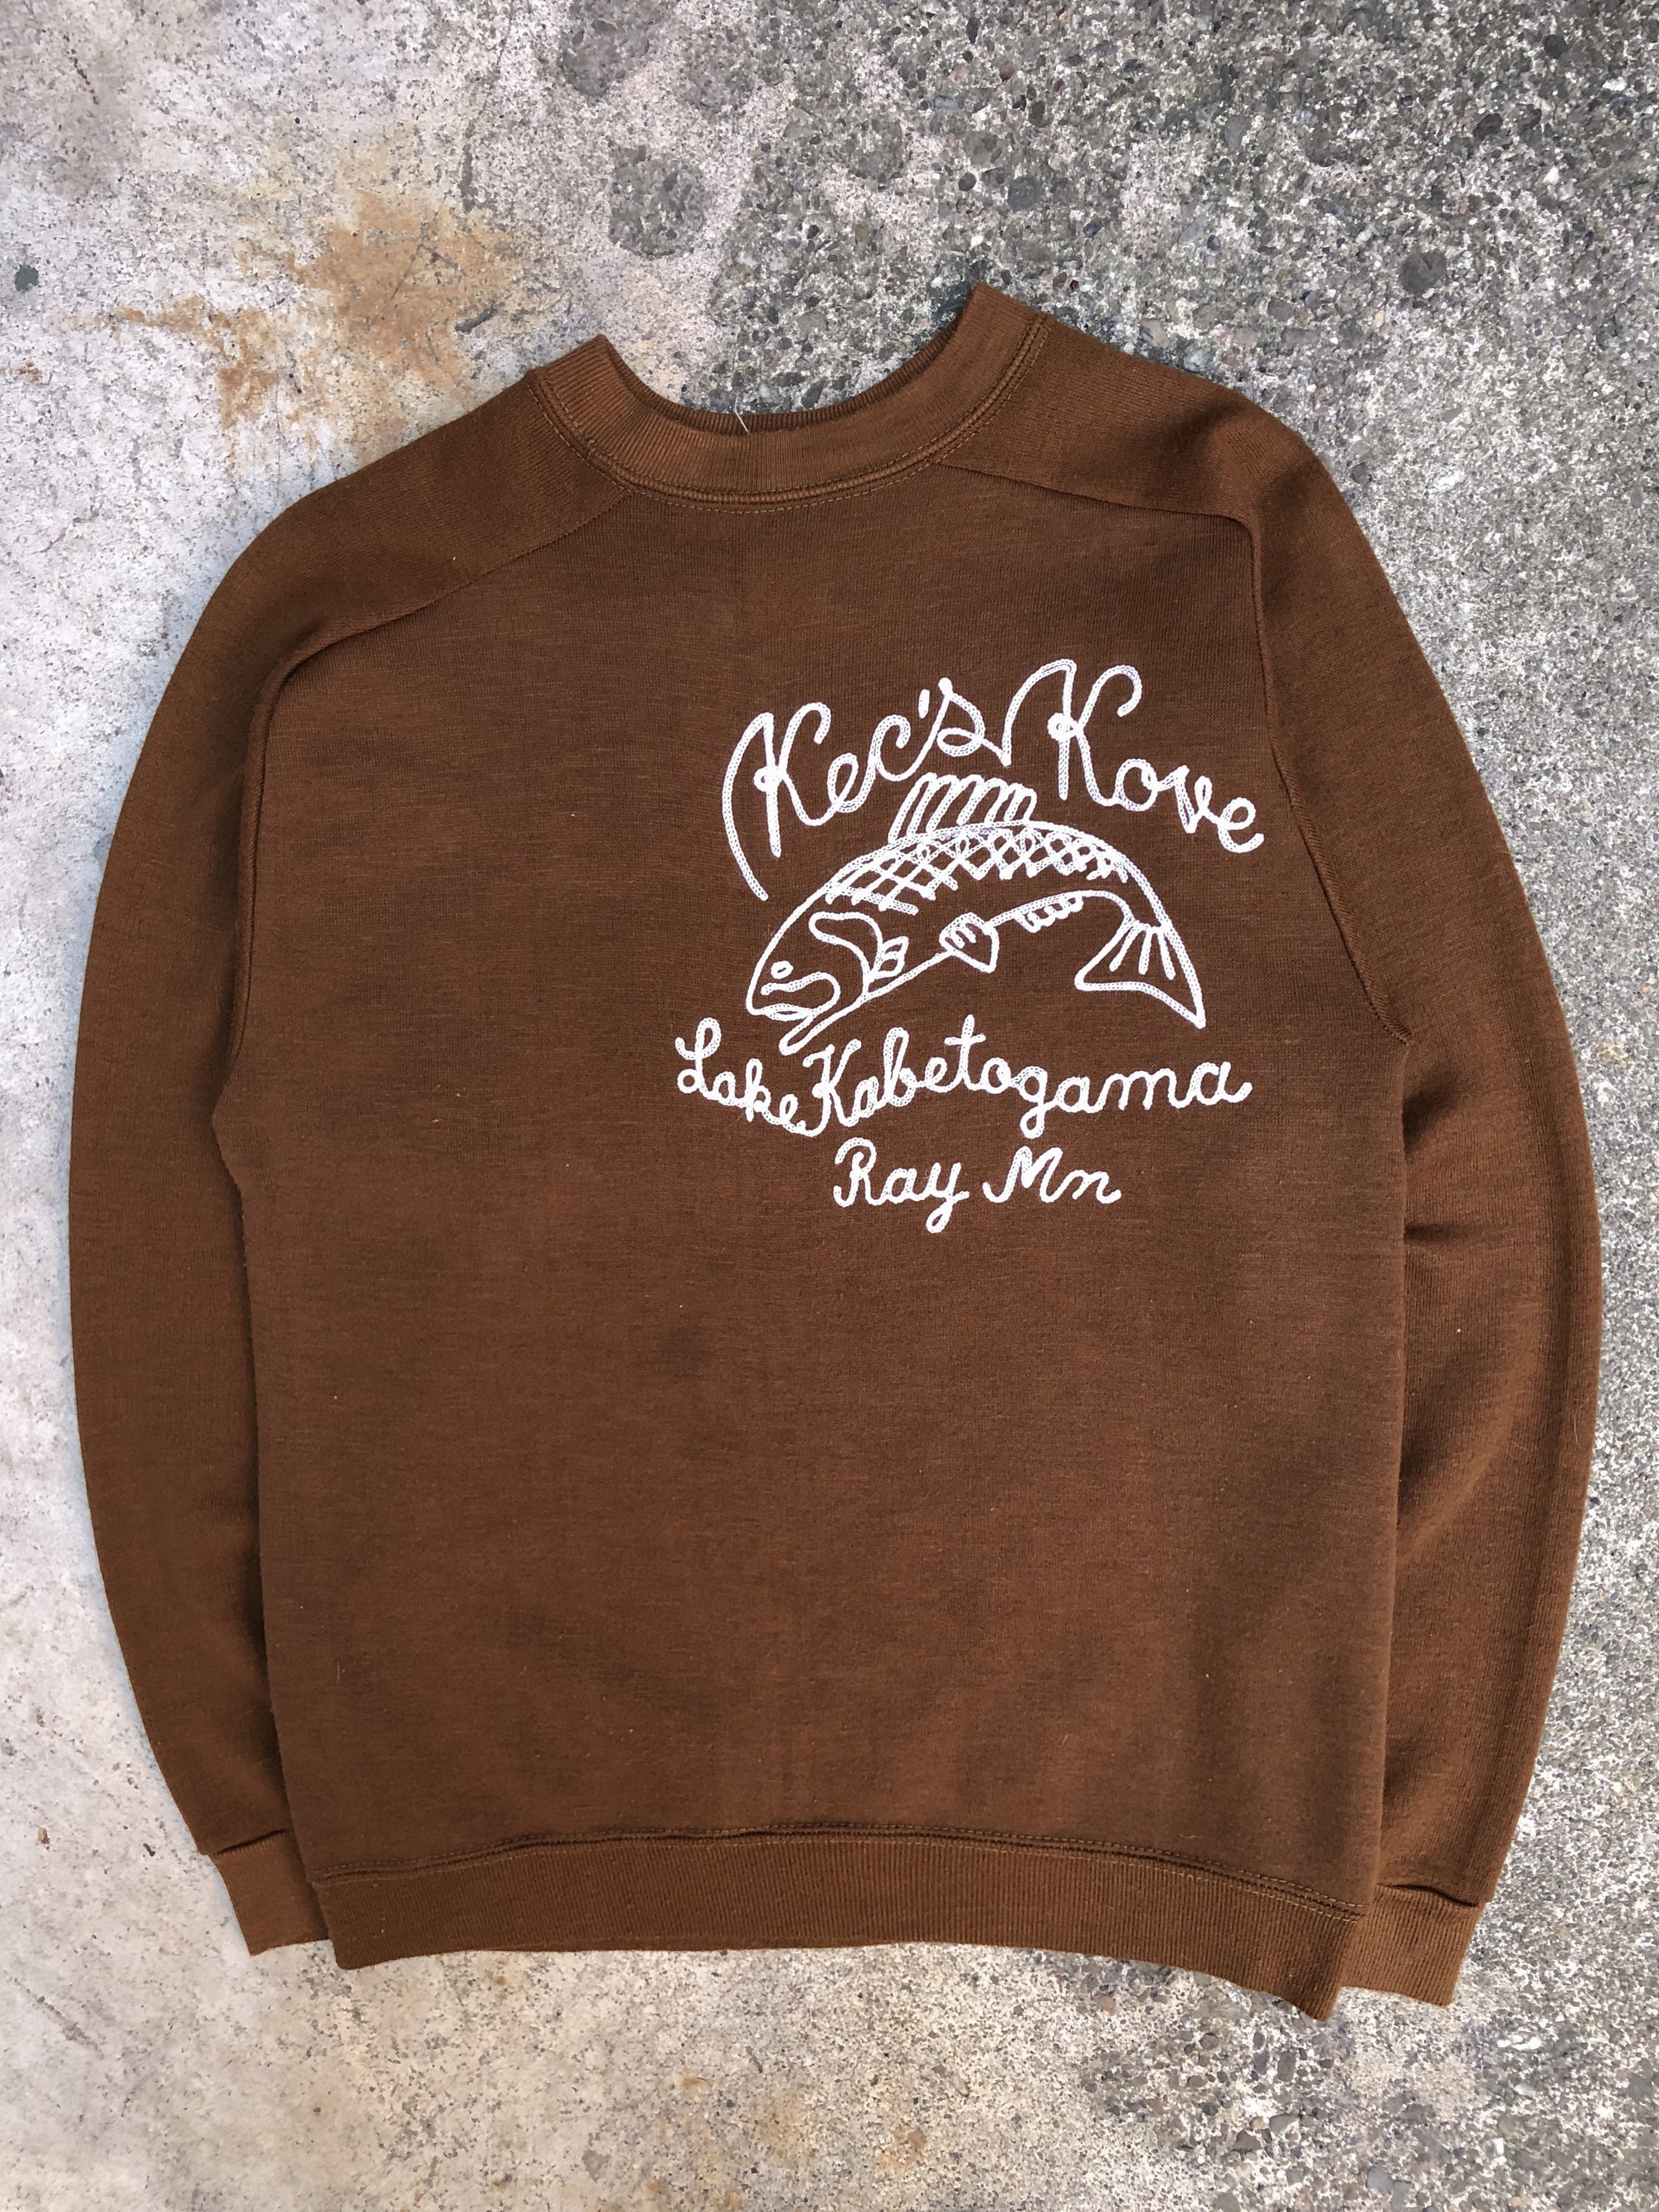 1960s Ochre Brown Chain Stitch “Kec’s Kove” Sweatshirt